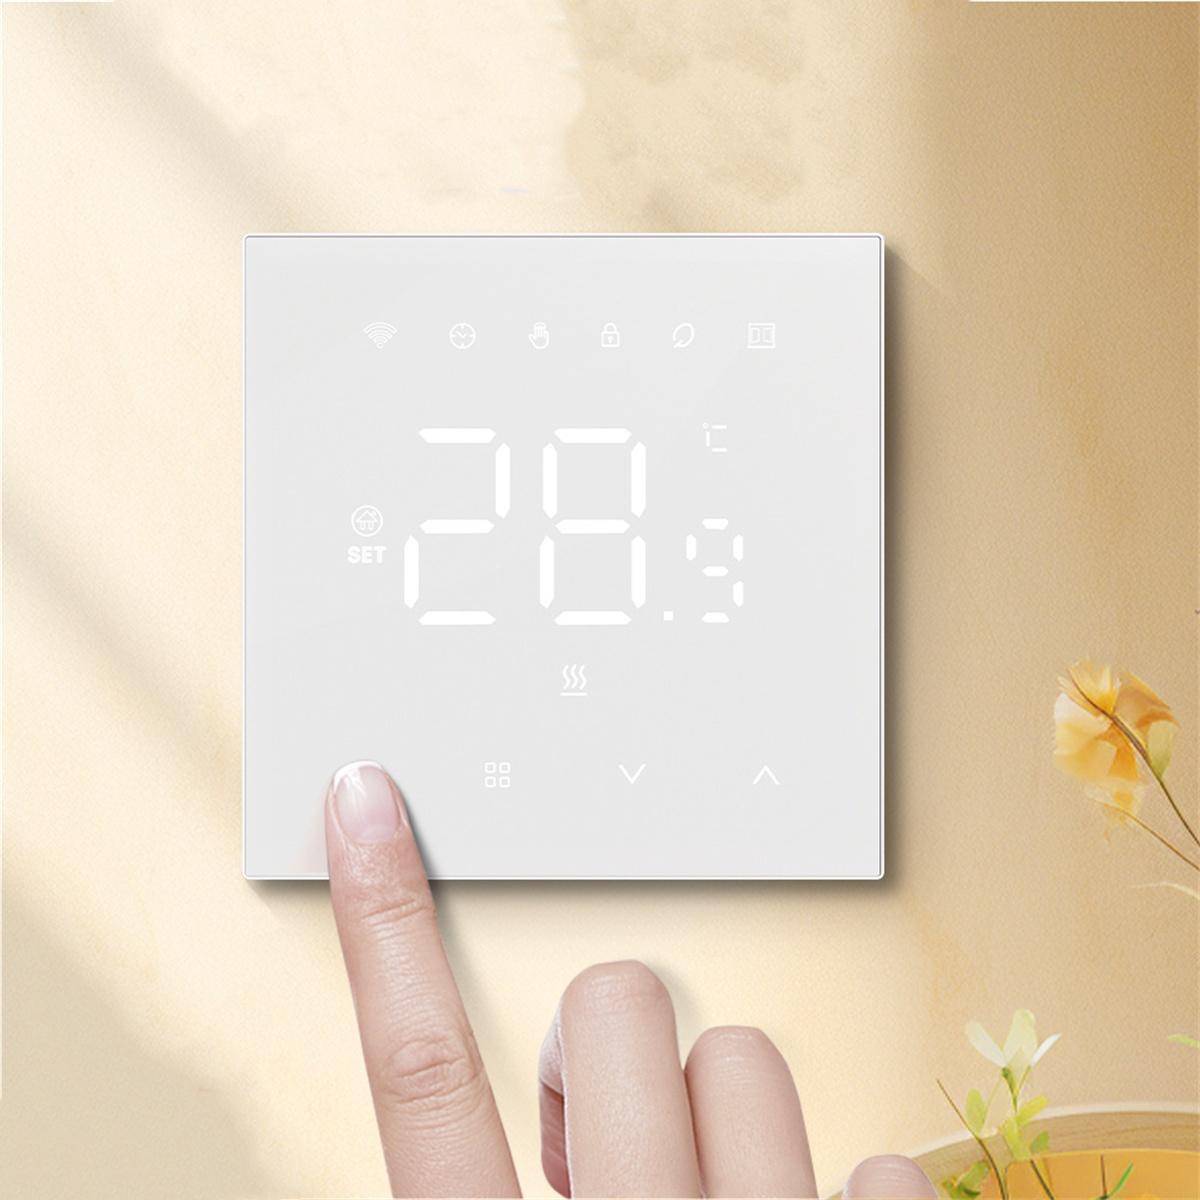 Thermostat, A183 SYNTEK Schwarz